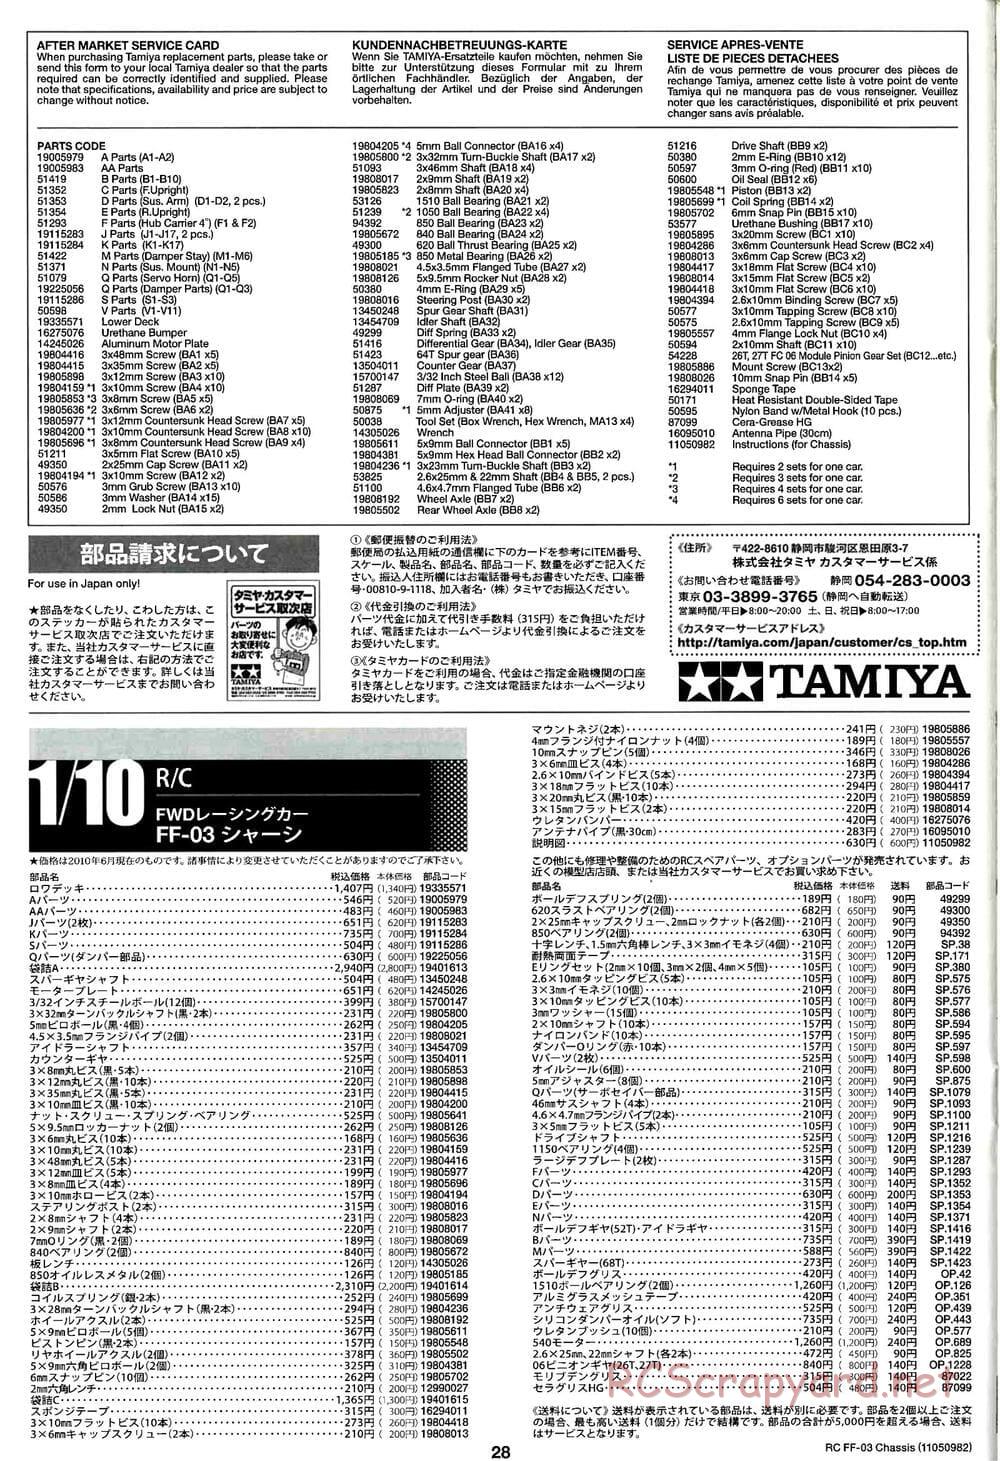 Tamiya - Castrol Honda Civic VTi - FF-03 Chassis - Manual - Page 28